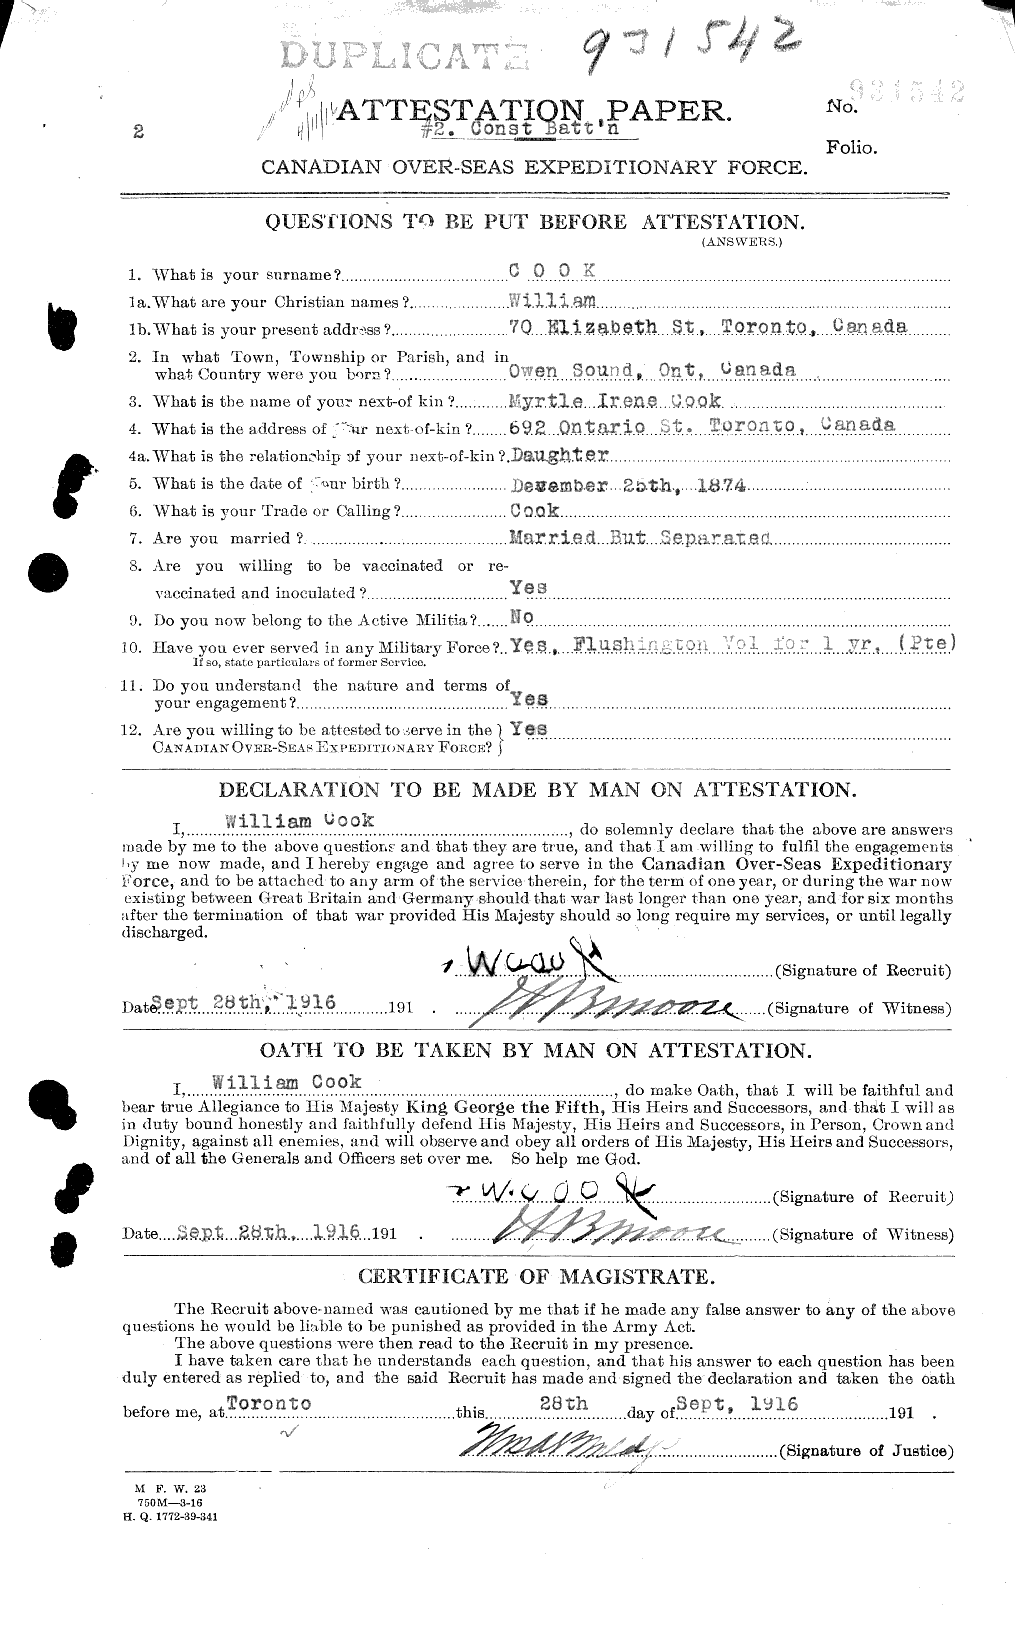 Dossiers du Personnel de la Première Guerre mondiale - CEC 039115a